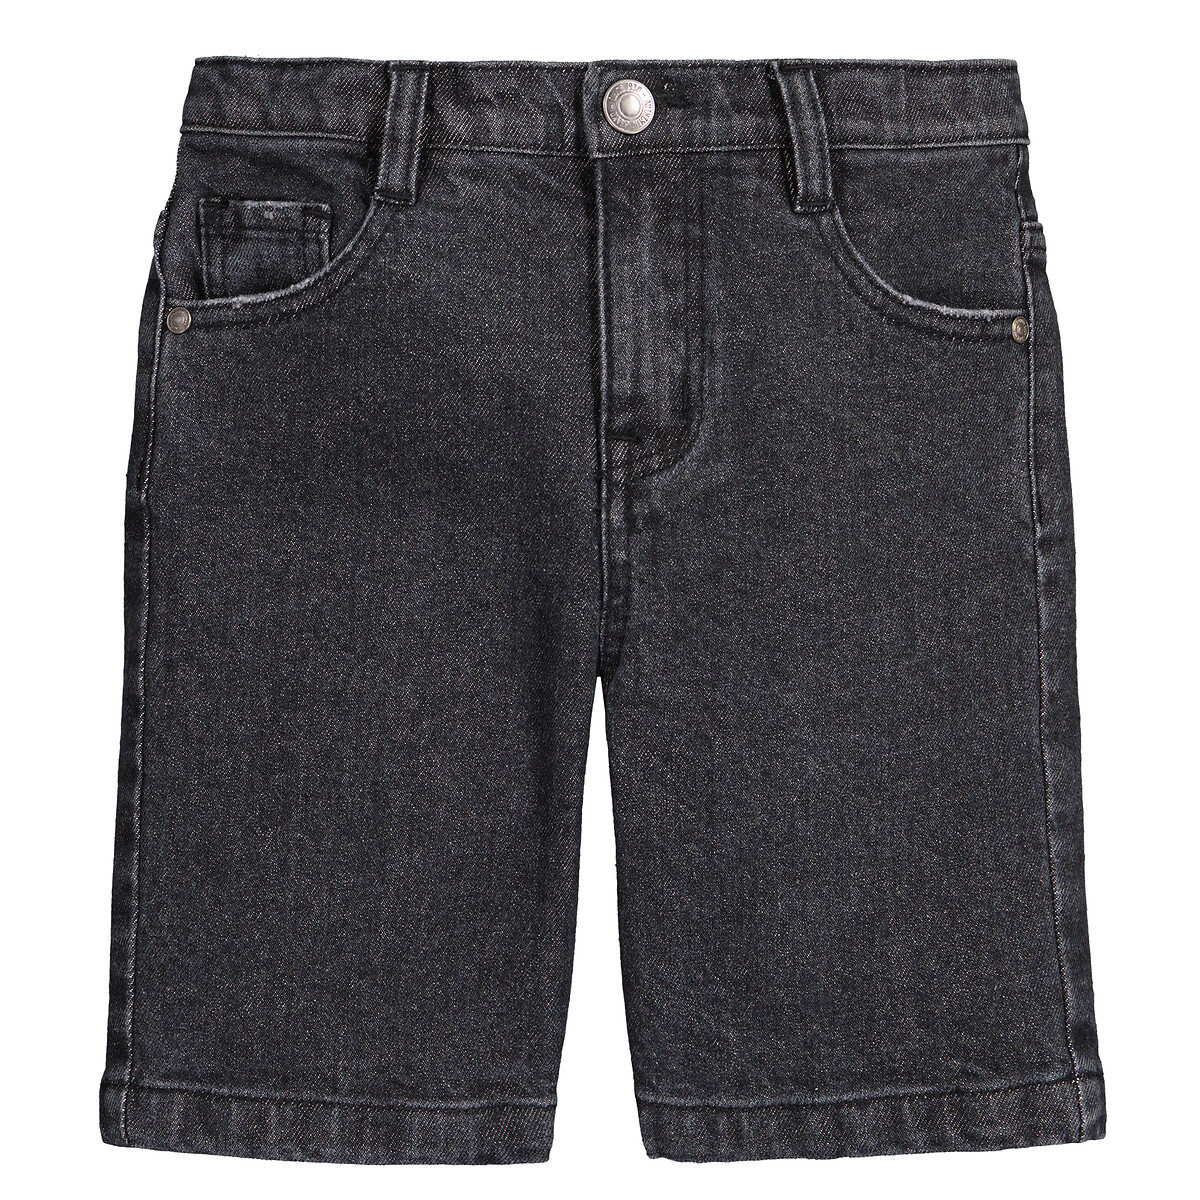 Бермуды Из джинсовой ткани 6 черный LaRedoute, размер 6 - фото 3